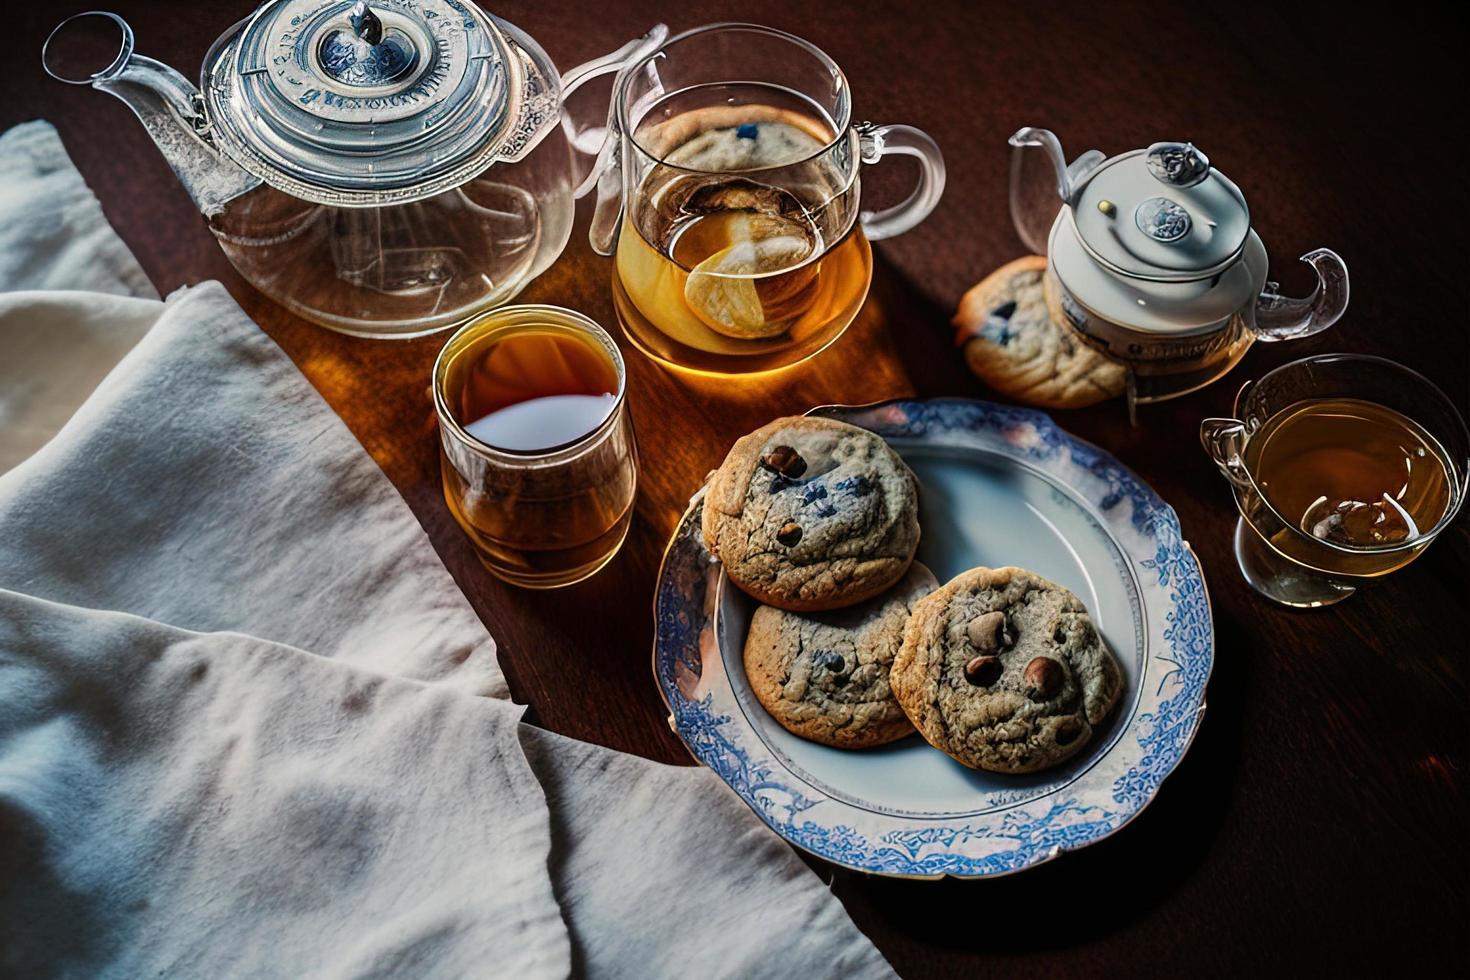 Fotografie eines Tellers mit Keksen und einem Glas Tee auf einem Tisch mit einem Tuch und einer Serviette darauf foto